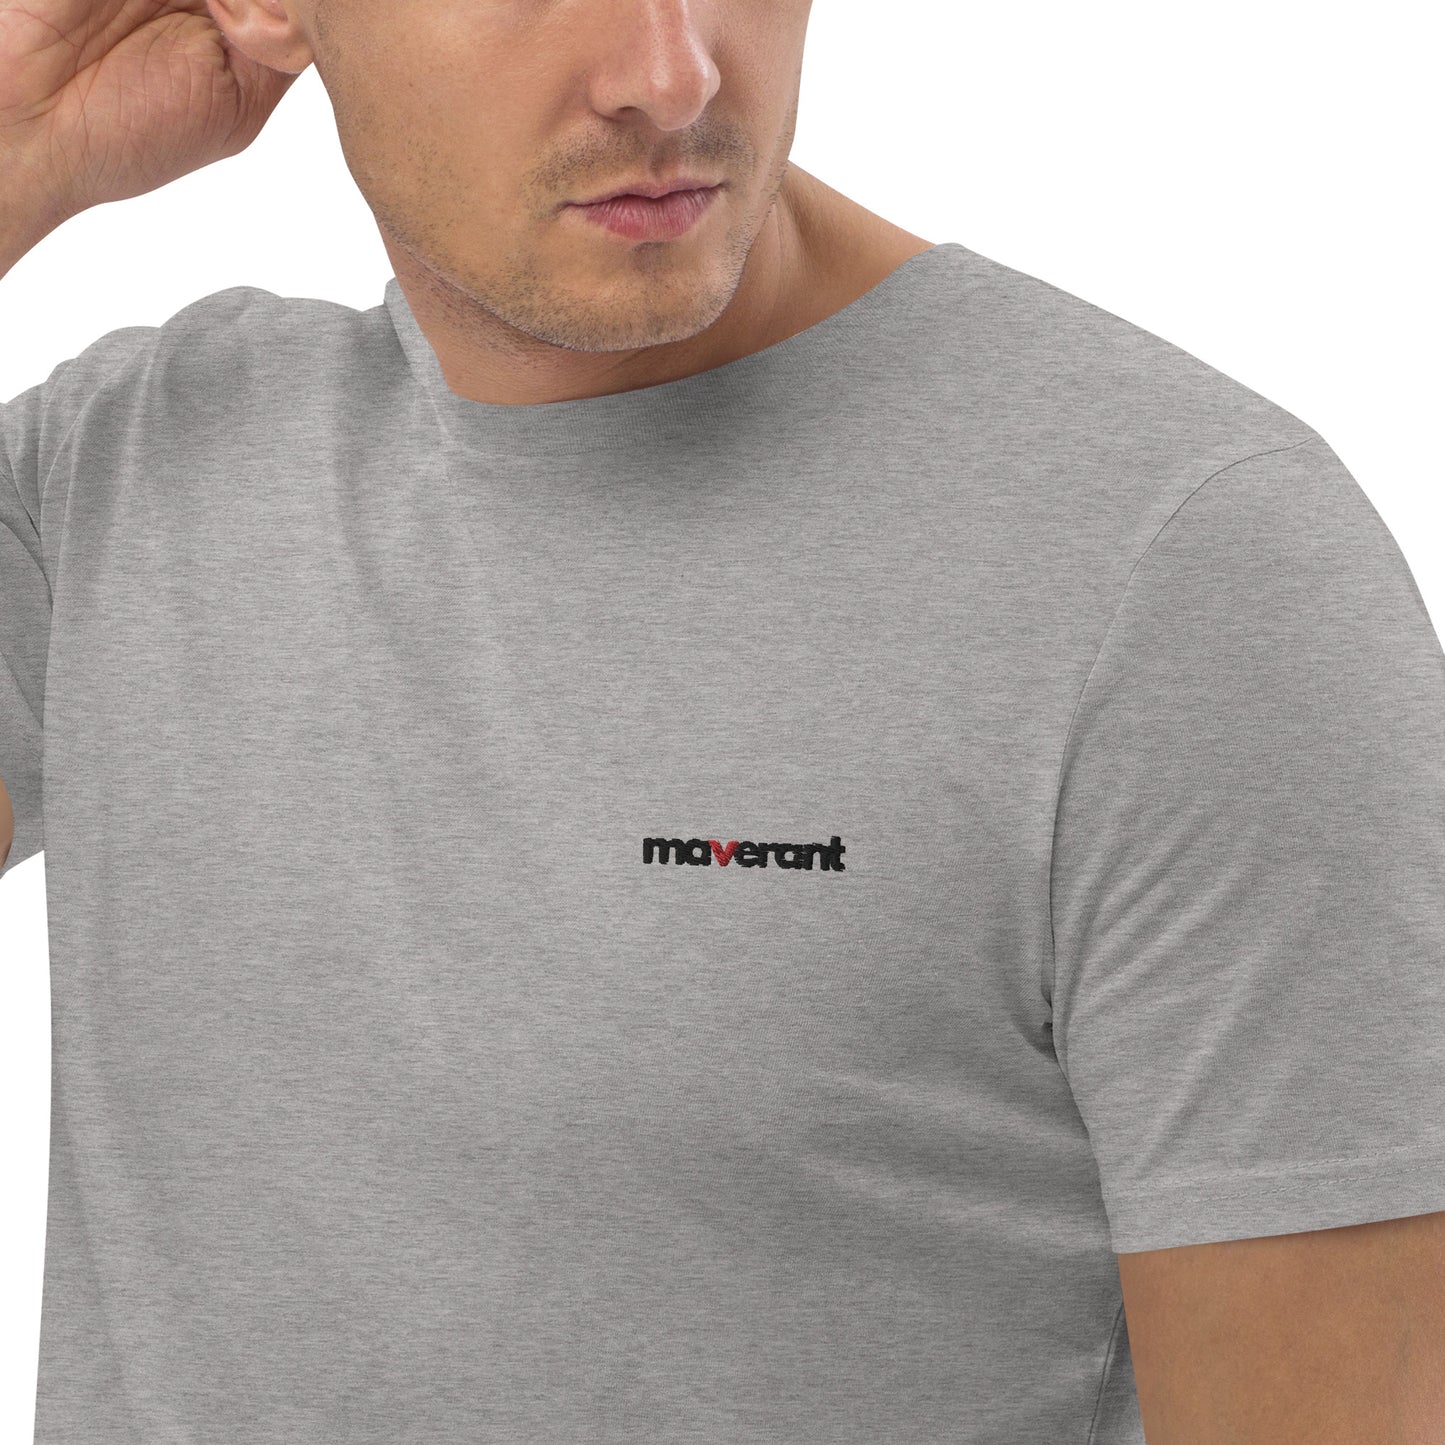 T-shirt in cotone organico unisex colore Heather Grey con logo ricamato